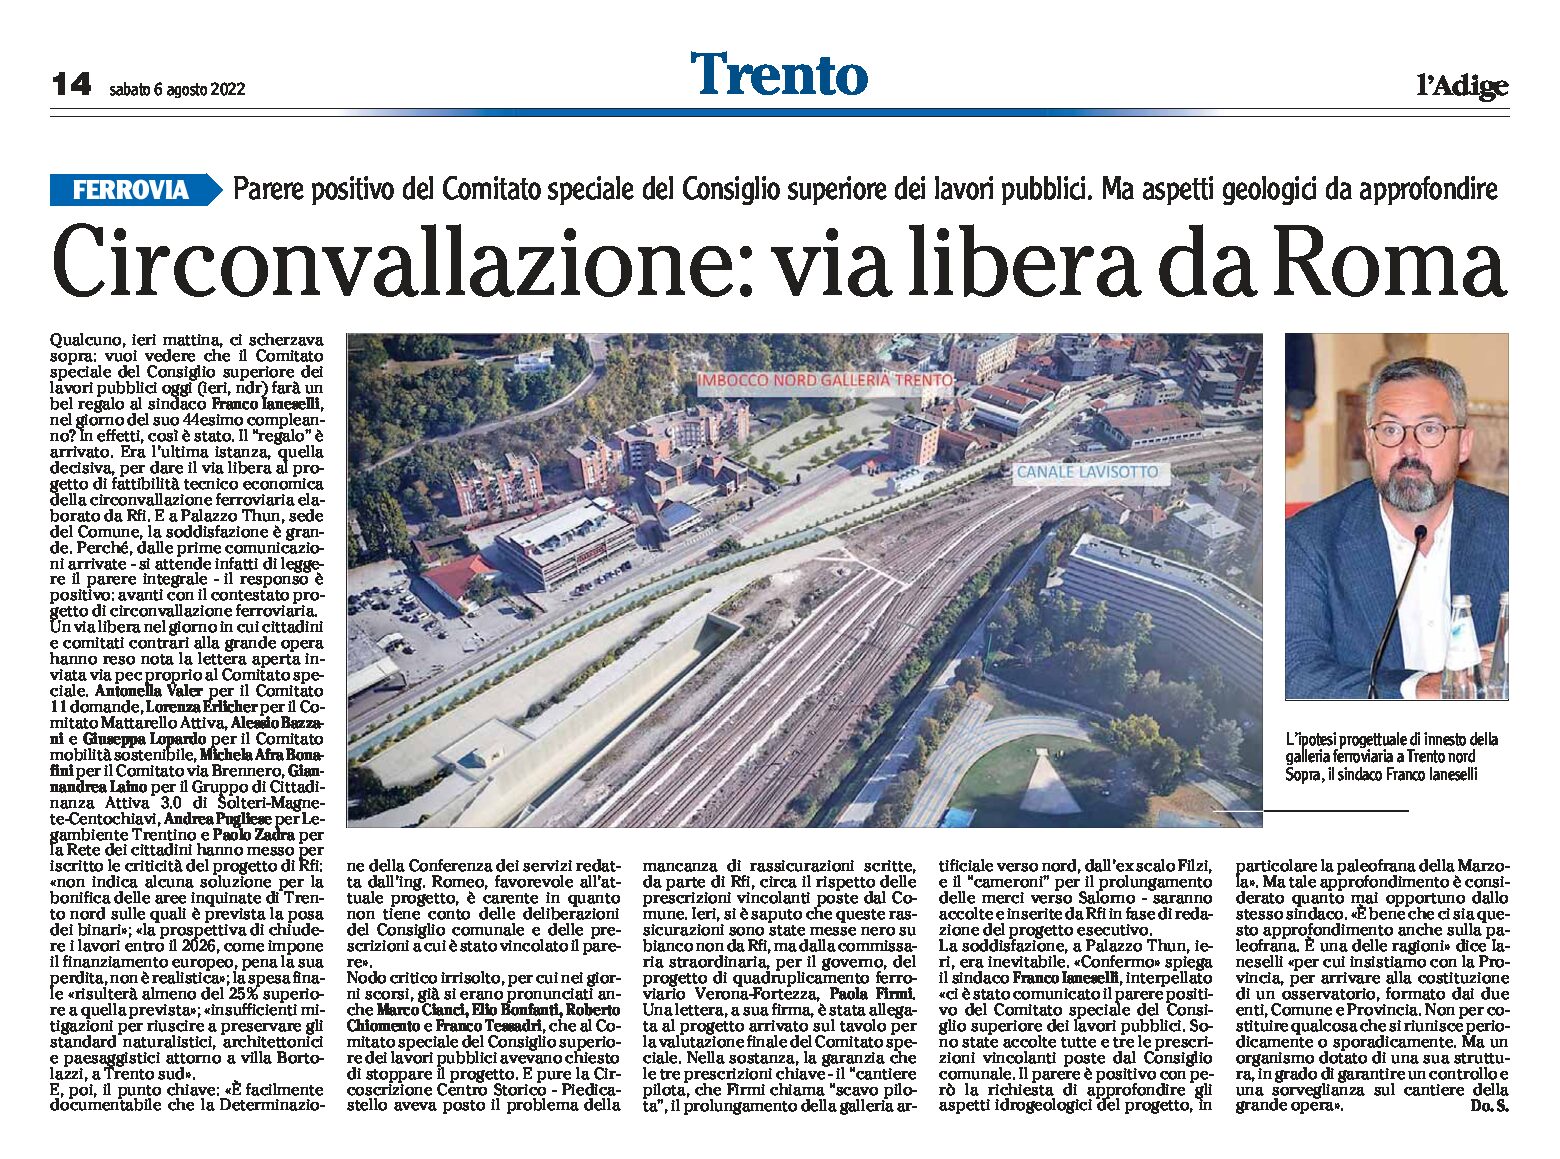 Trento, bypass: via libera da Roma, ma aspetti geologici da approfondire